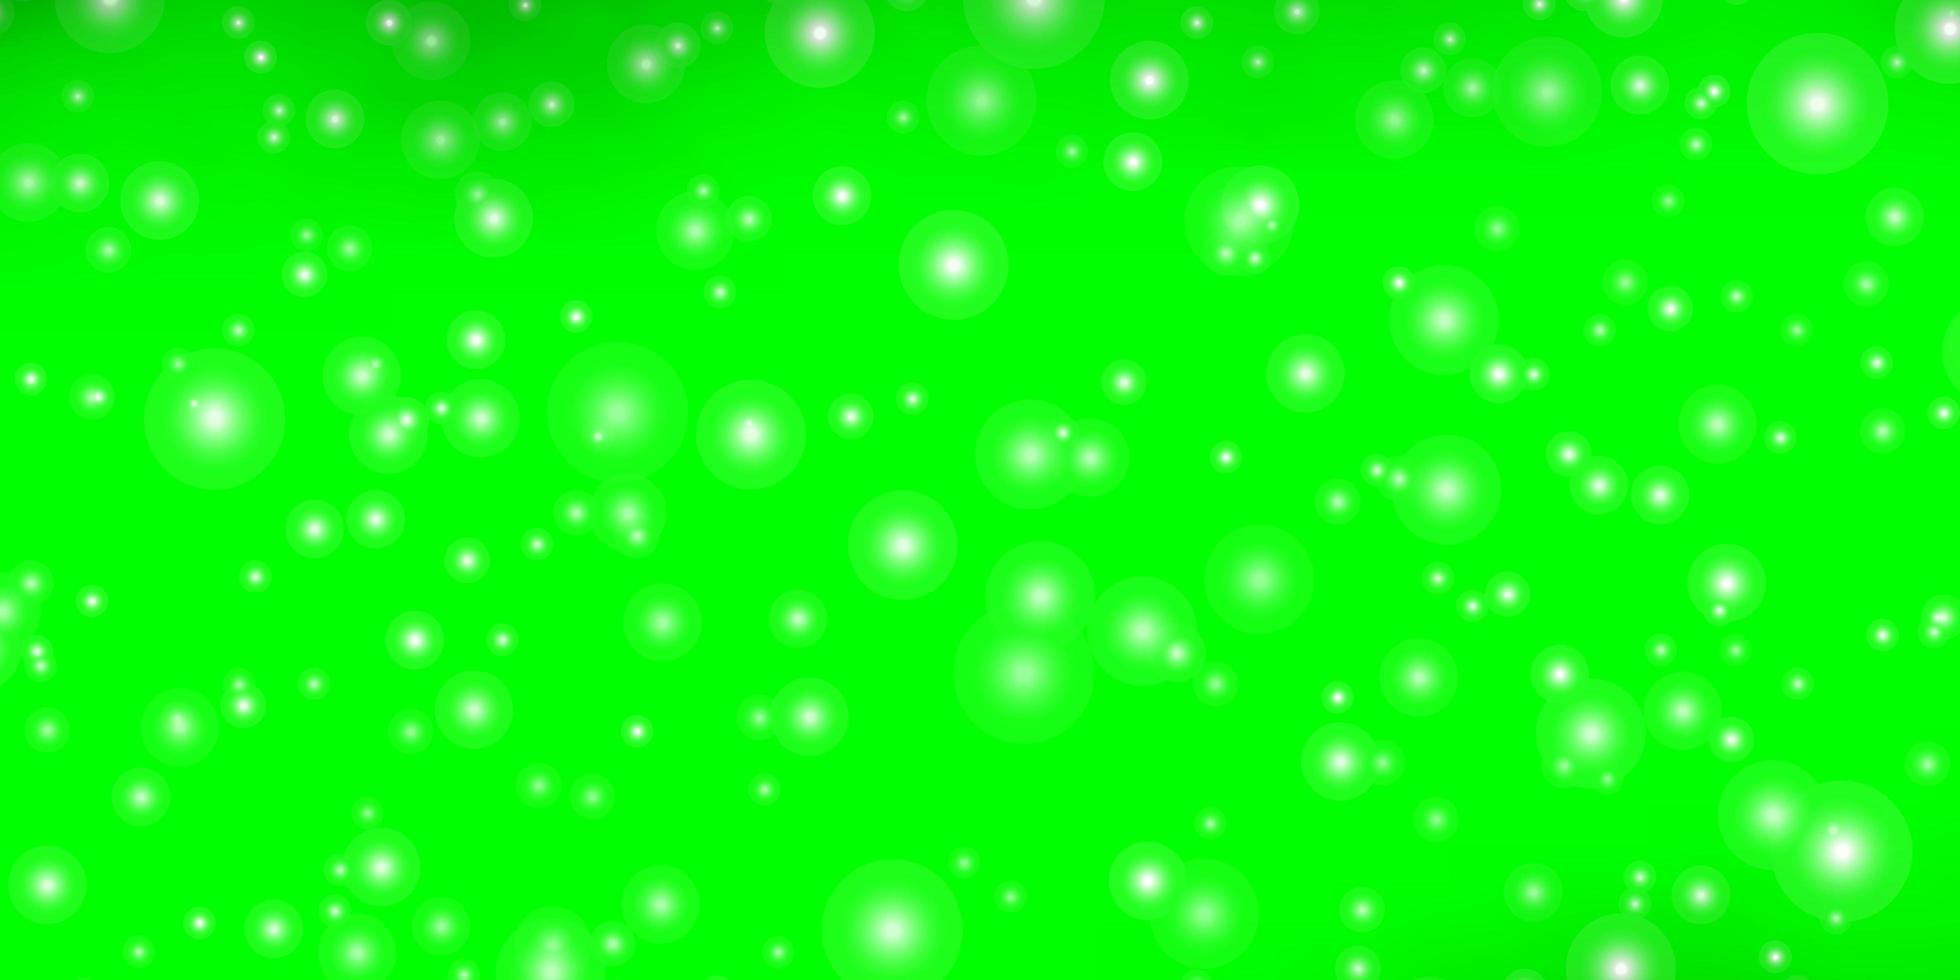 fundo verde com estrelas pequenas e grandes. vetor